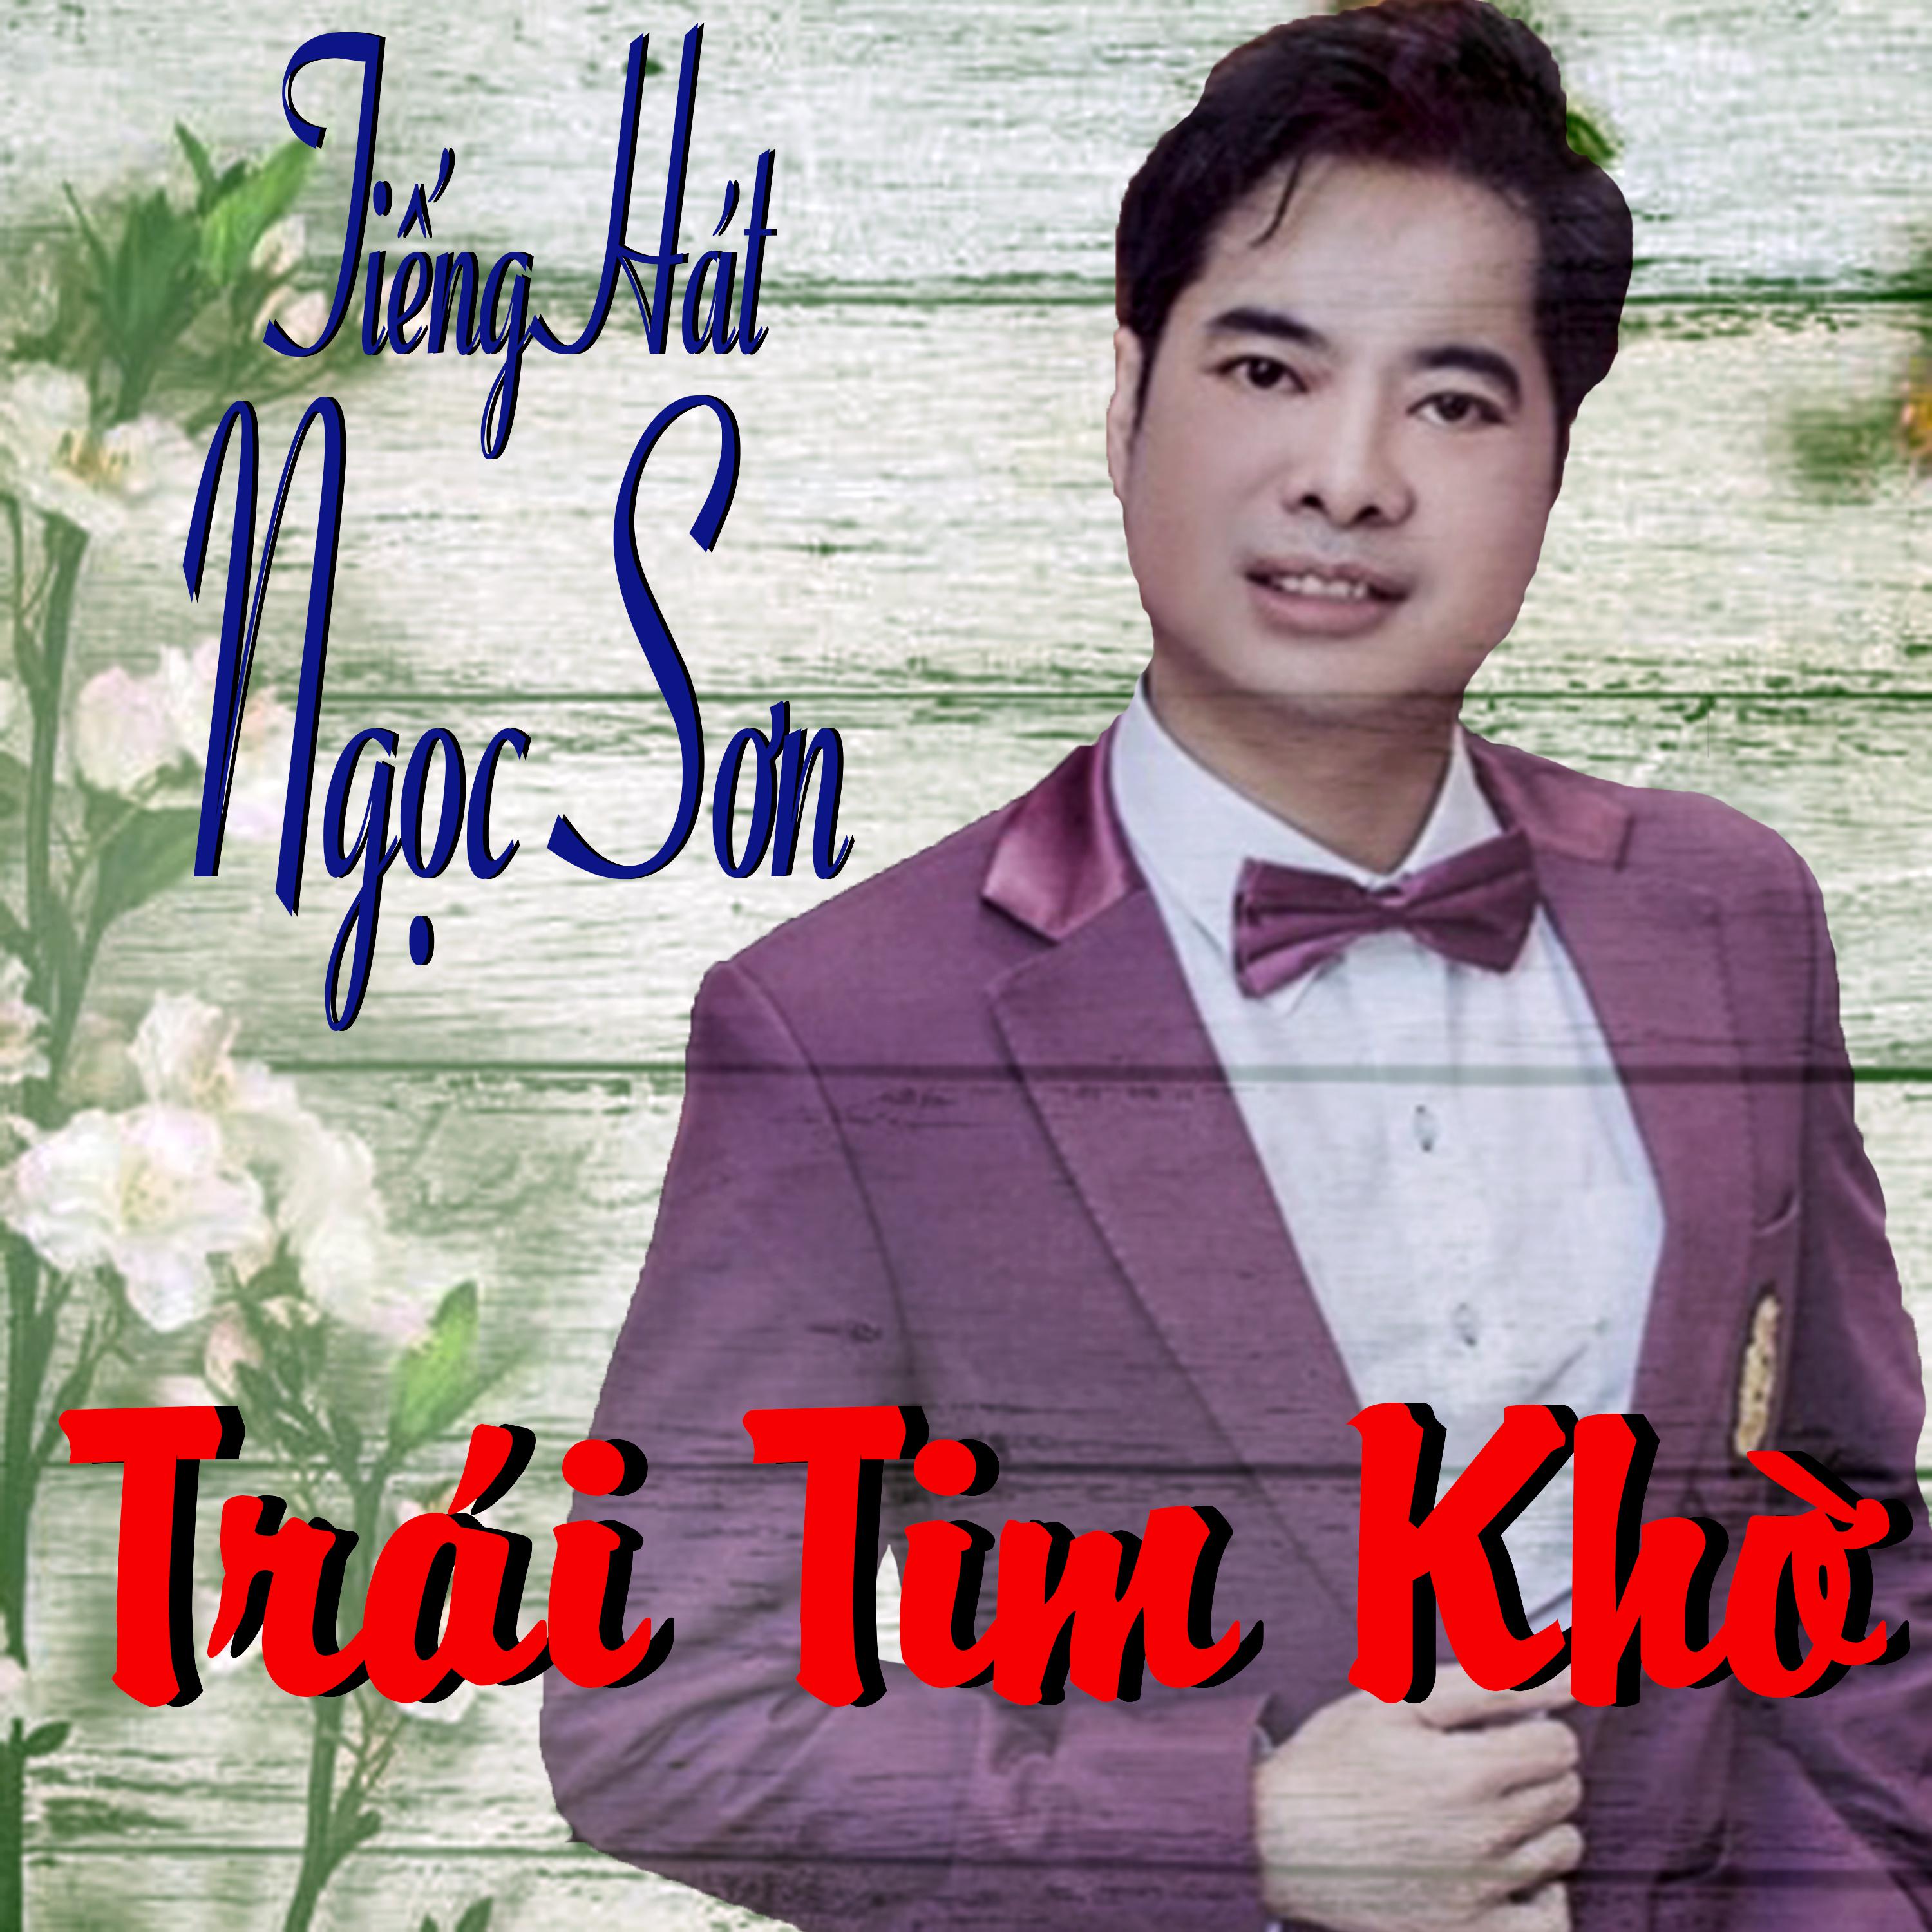 Vang Trang Co Don-Ngoc Son